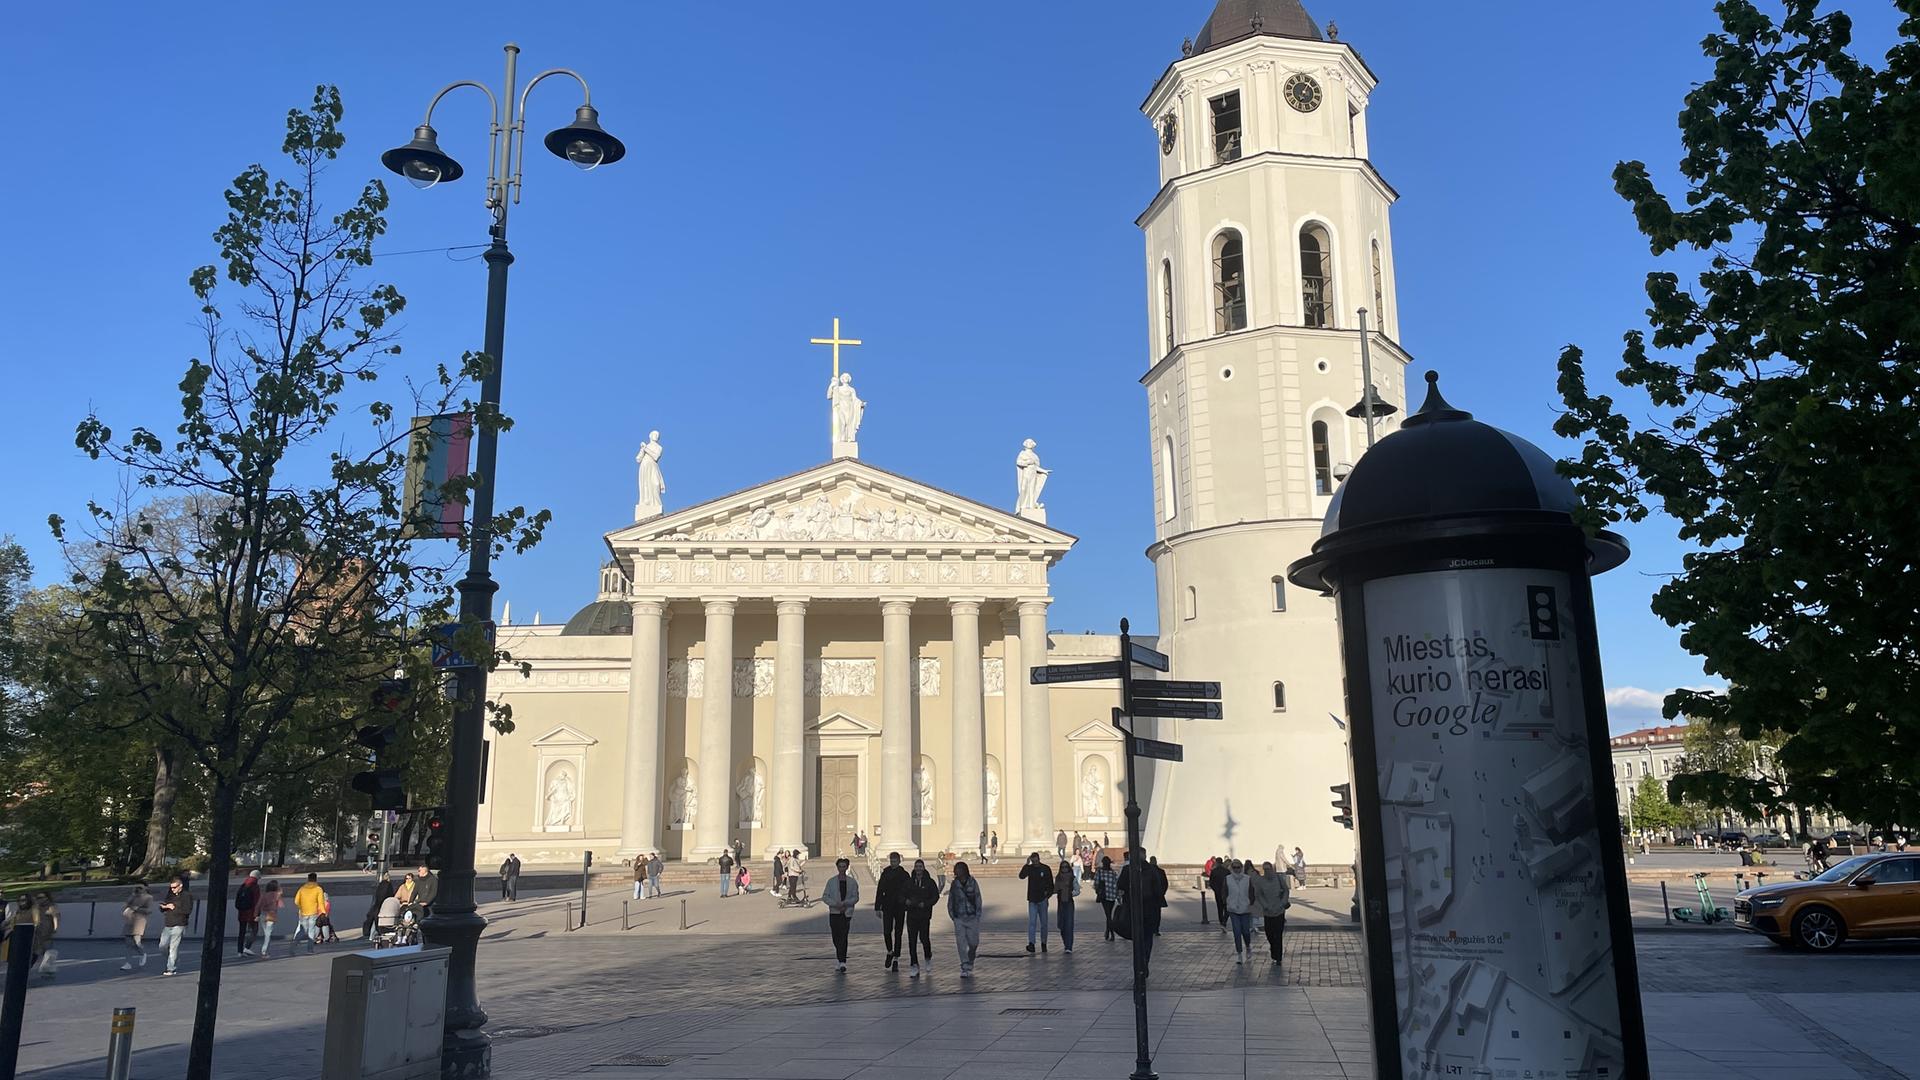 Alltag an einem Frühlingstag in Litauens Hauptstadt Vilnius. Menschen gehen spazieren, im Hintergrund die Kathedrale der Stadt, rechts im Vordergrund eine Litfaßsäule.